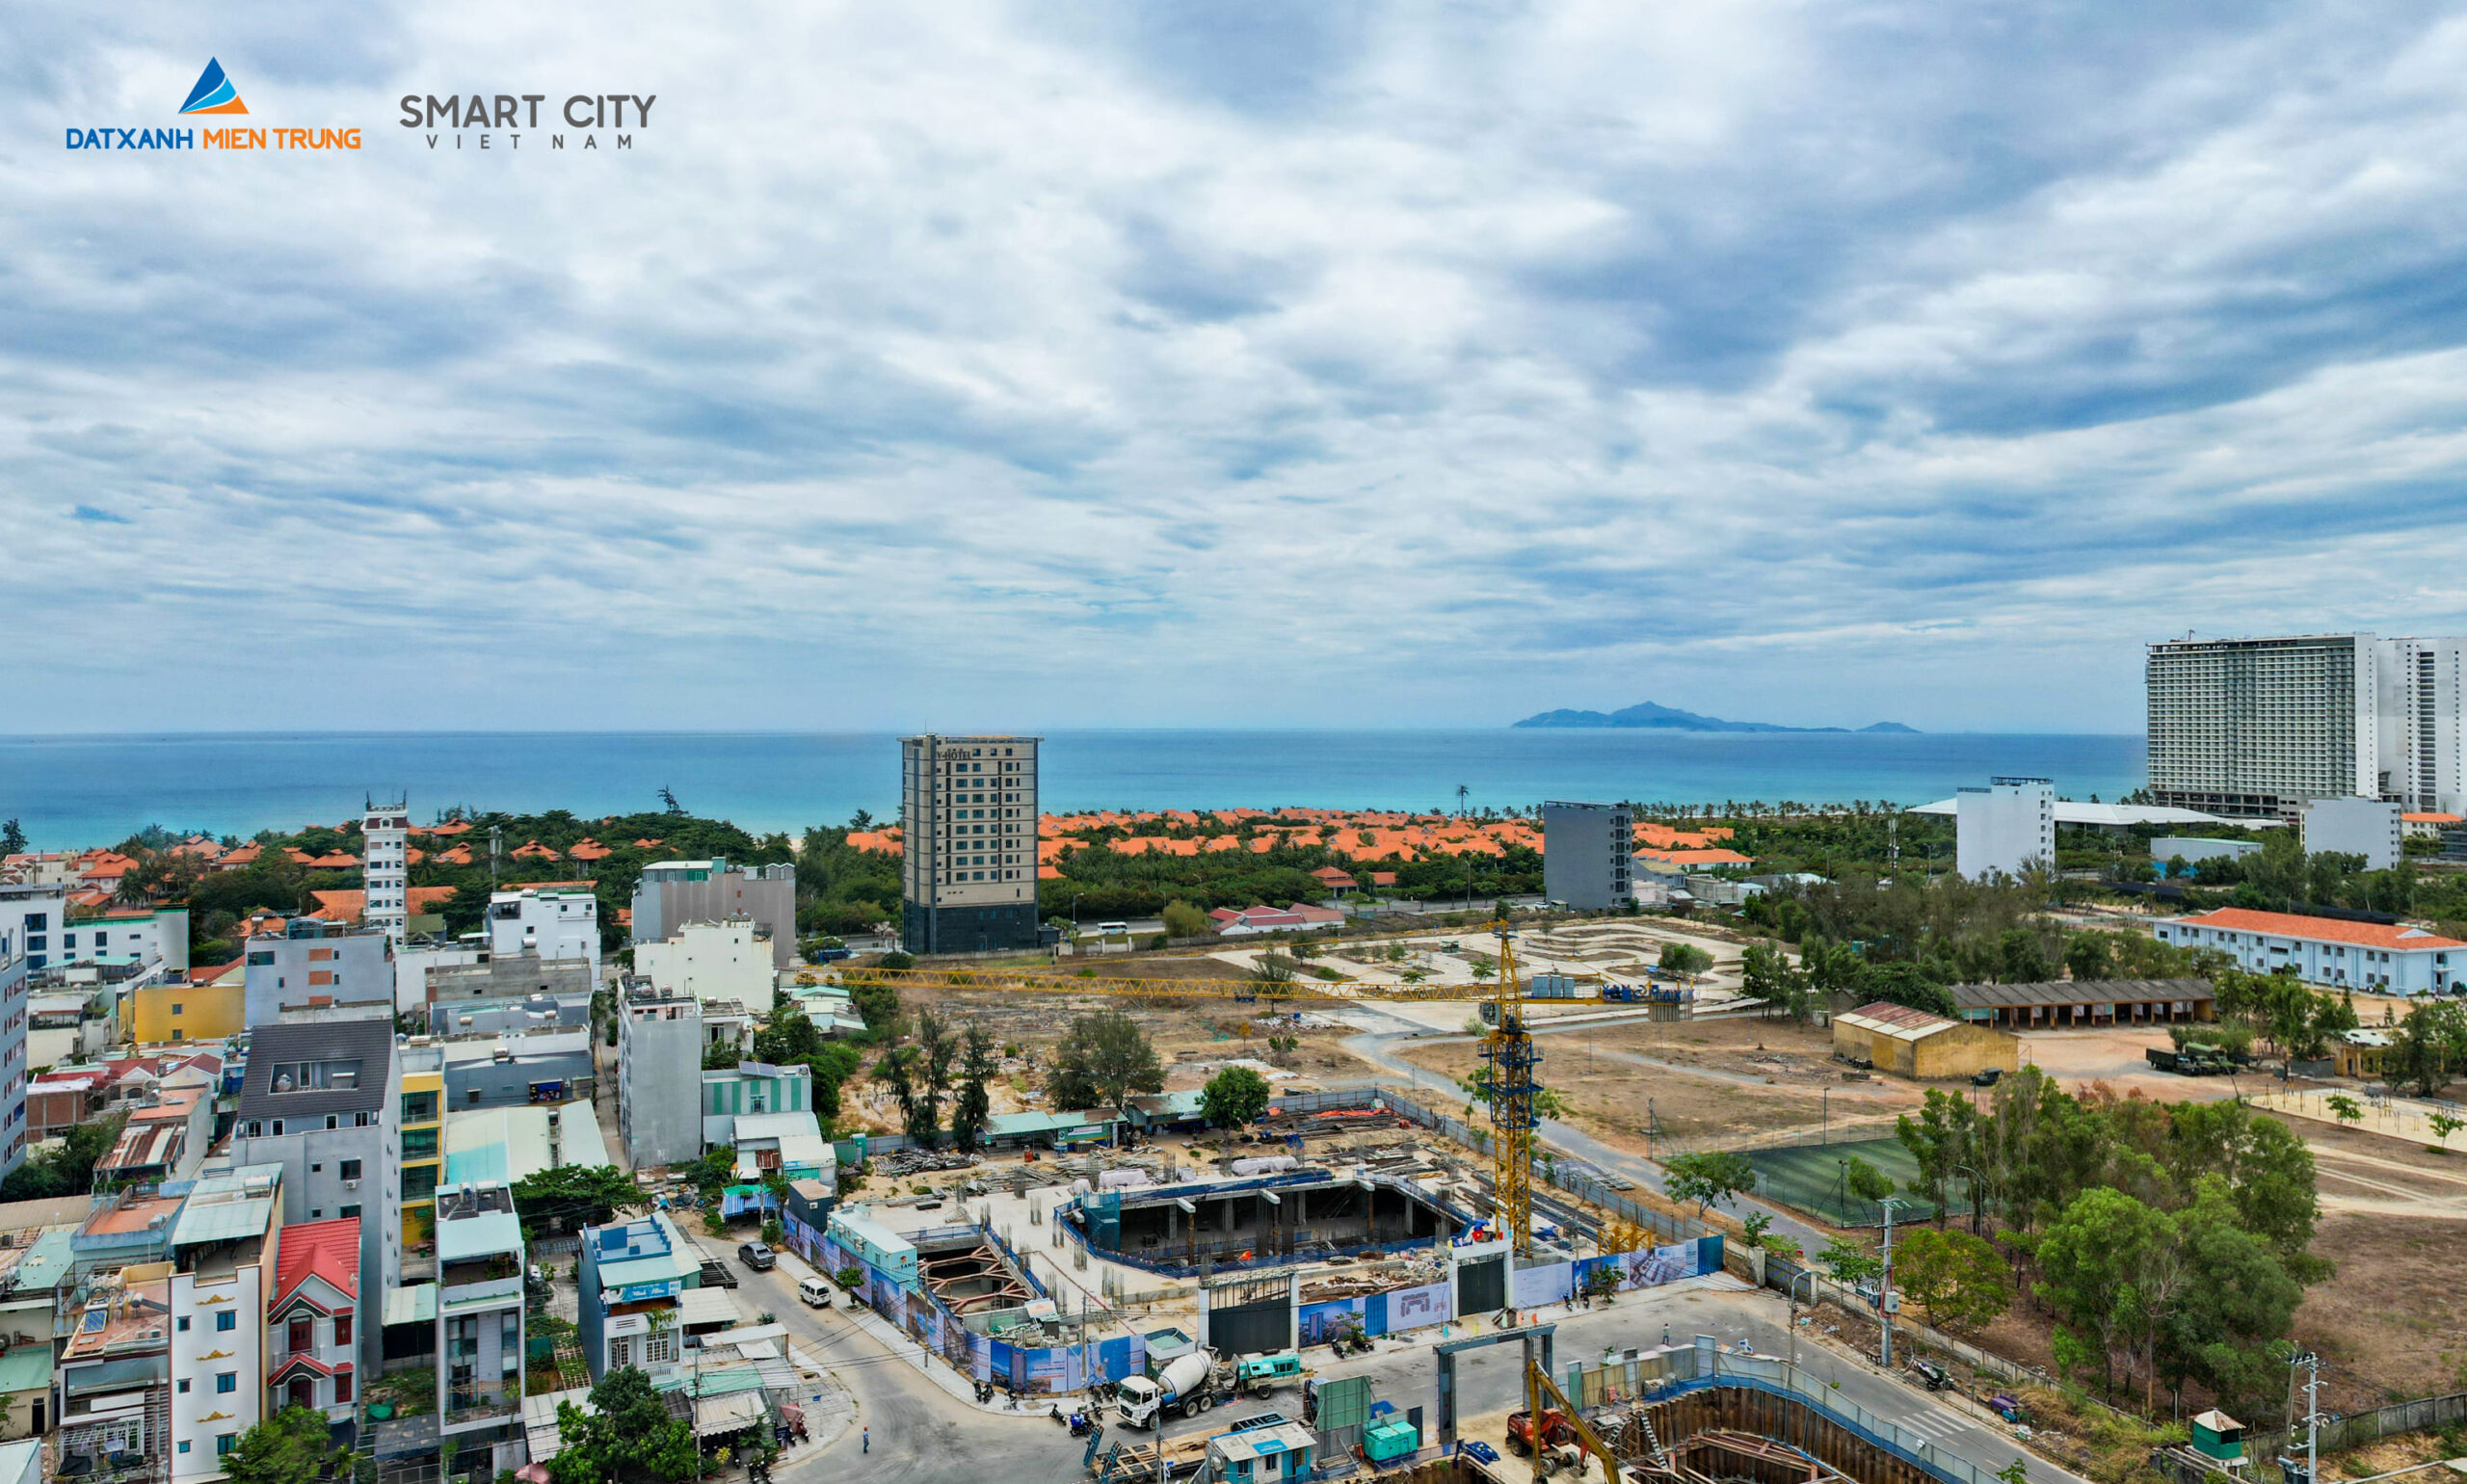 Tiến độ thi công dự án The Sang Residence tháng 07.2021 - Viet Nam Smart City